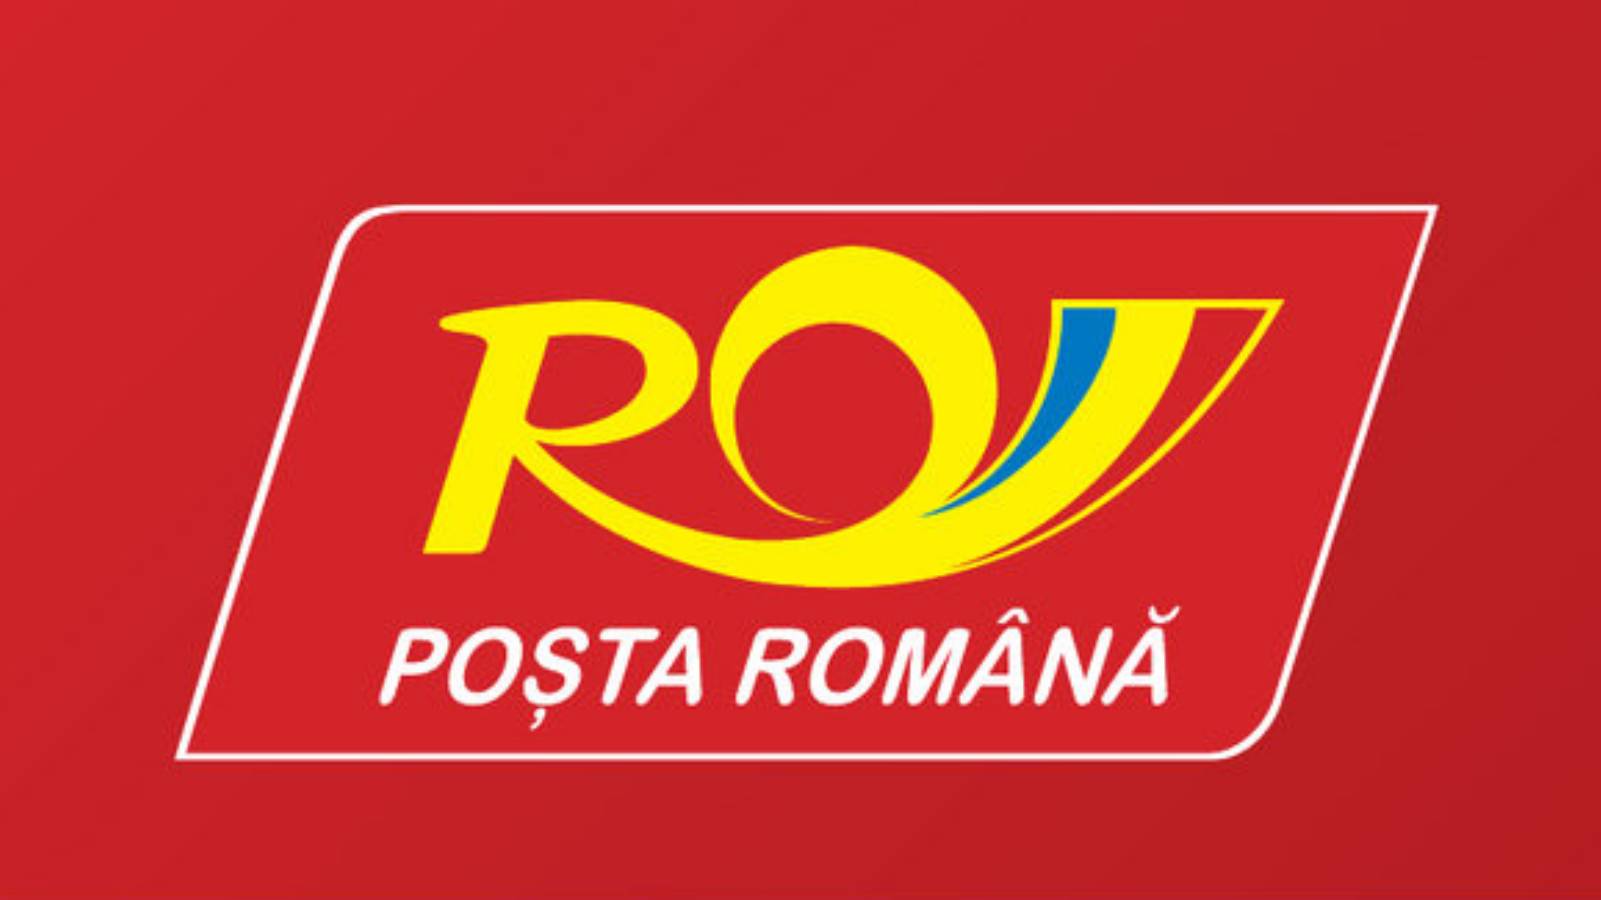 Paketversicherung der rumänischen Post